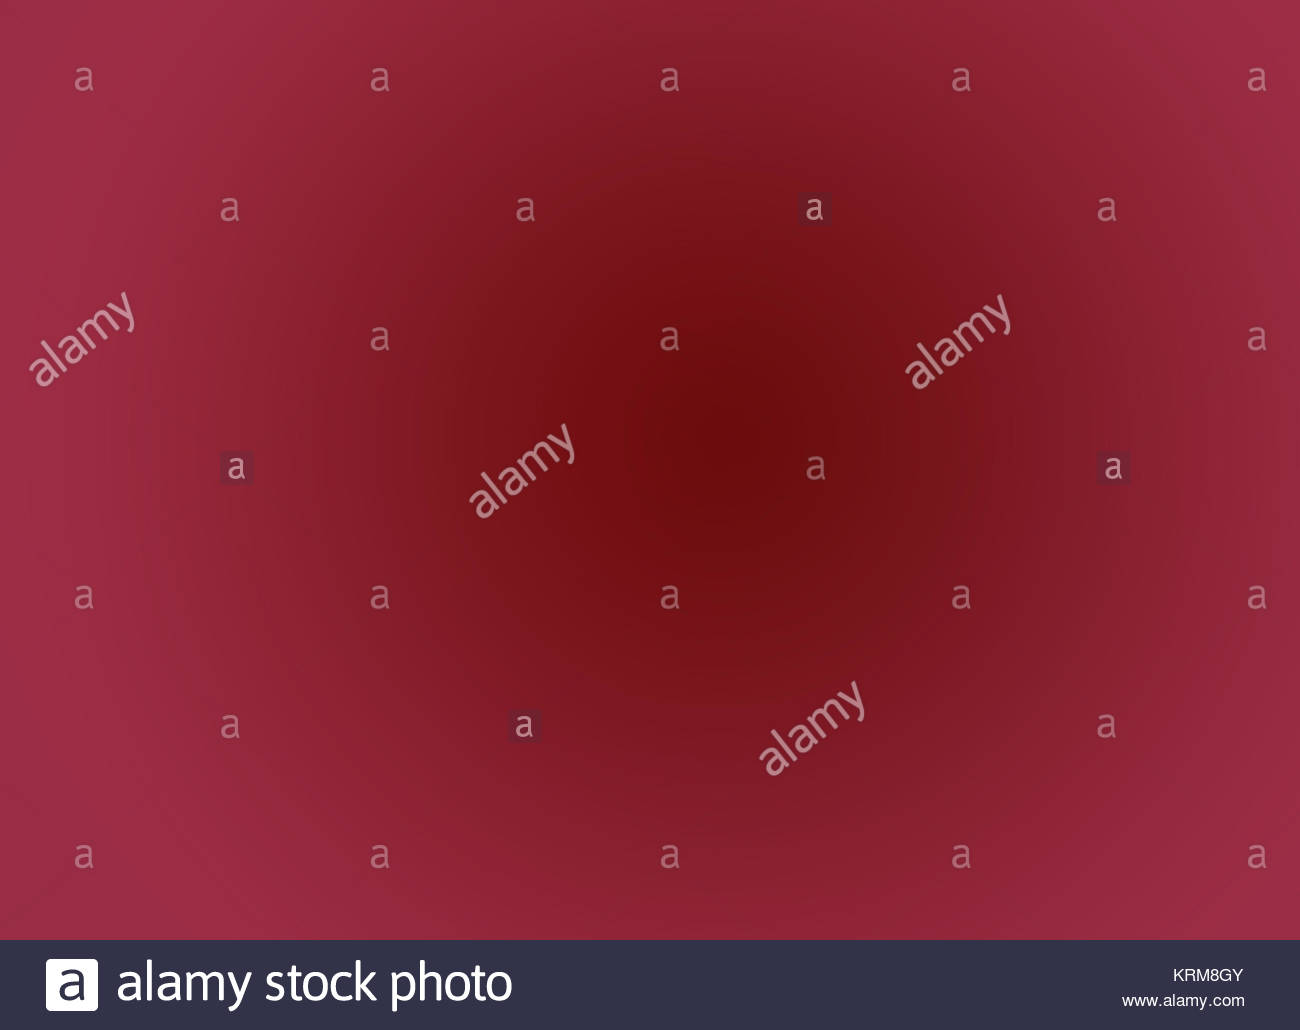 Crimson Wallpaper Stock Photos Image